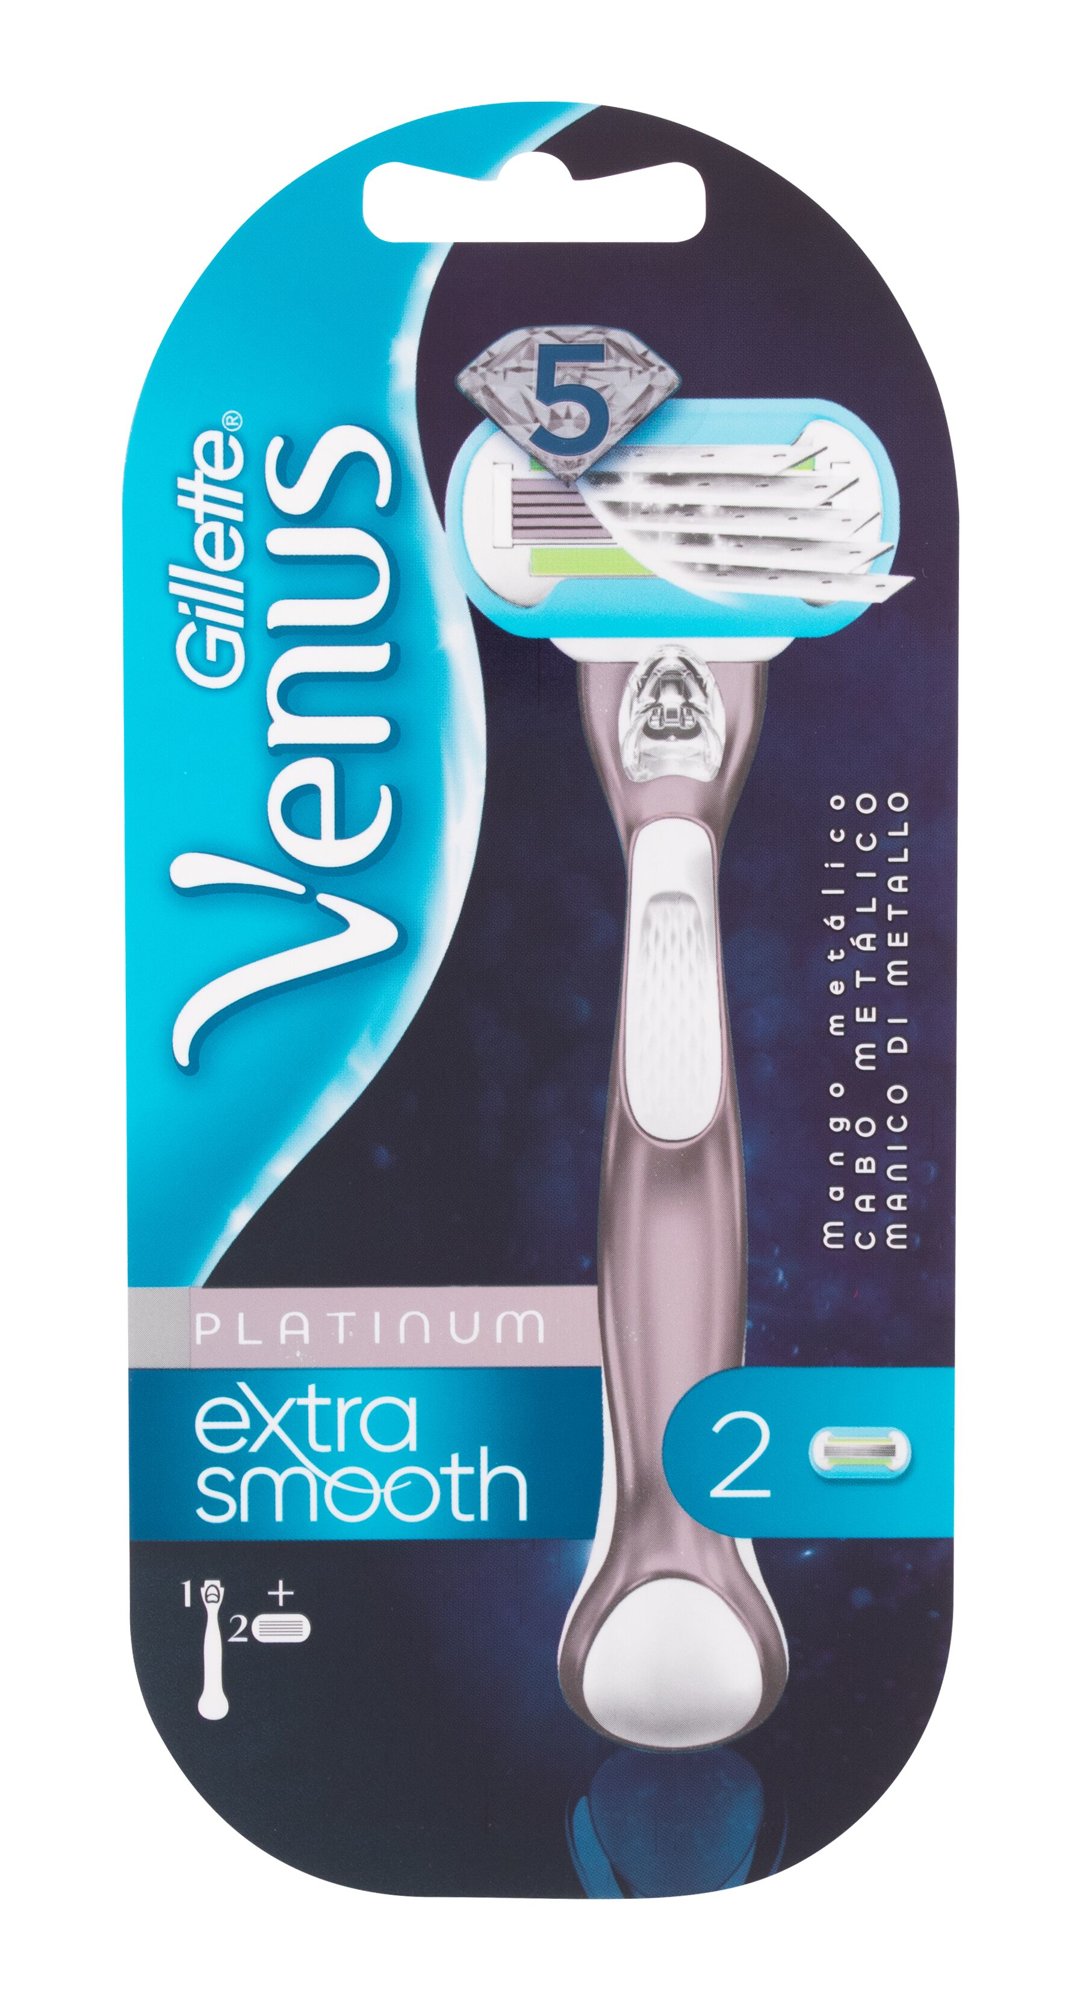 Gillette Venus Extra Smooth Platinum skustuvas